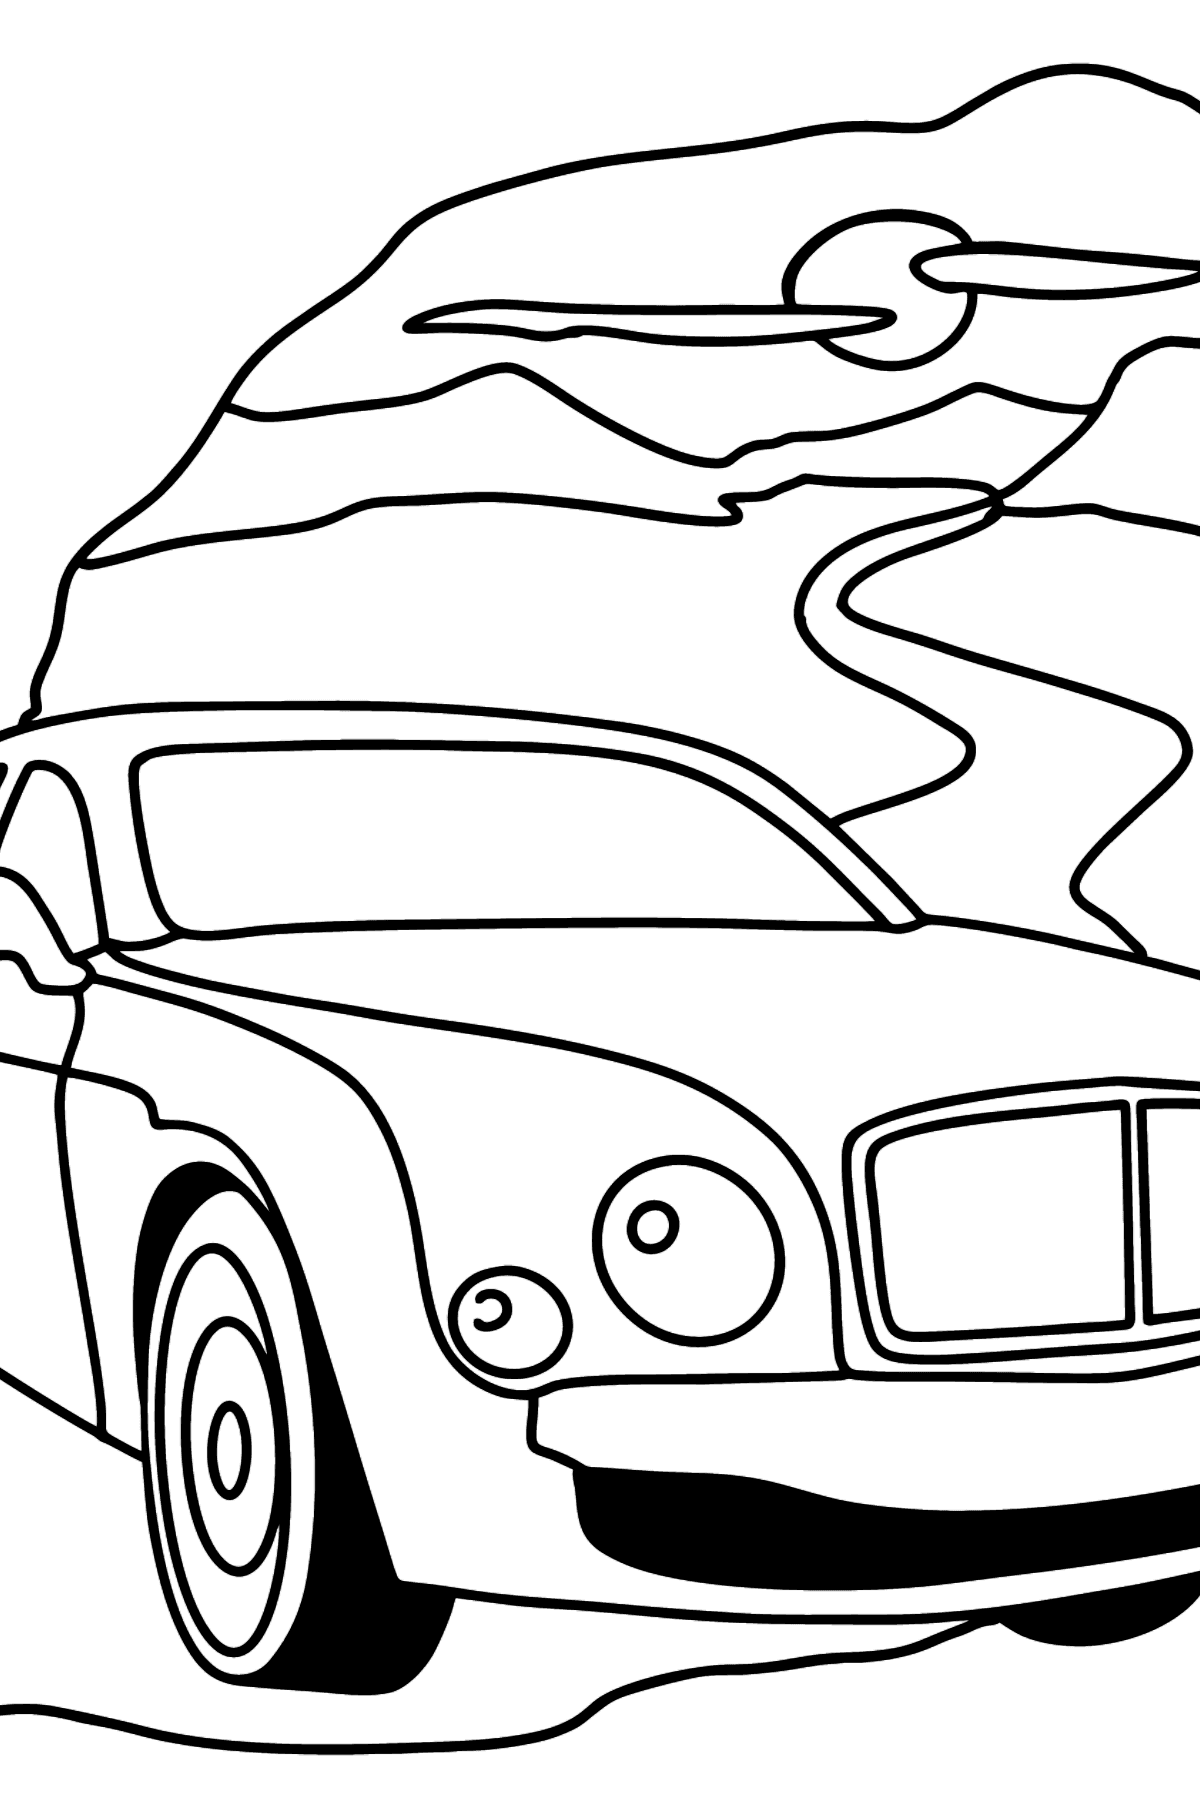 Раскраска Машина Bentley Mulsanne - Картинки для Детей